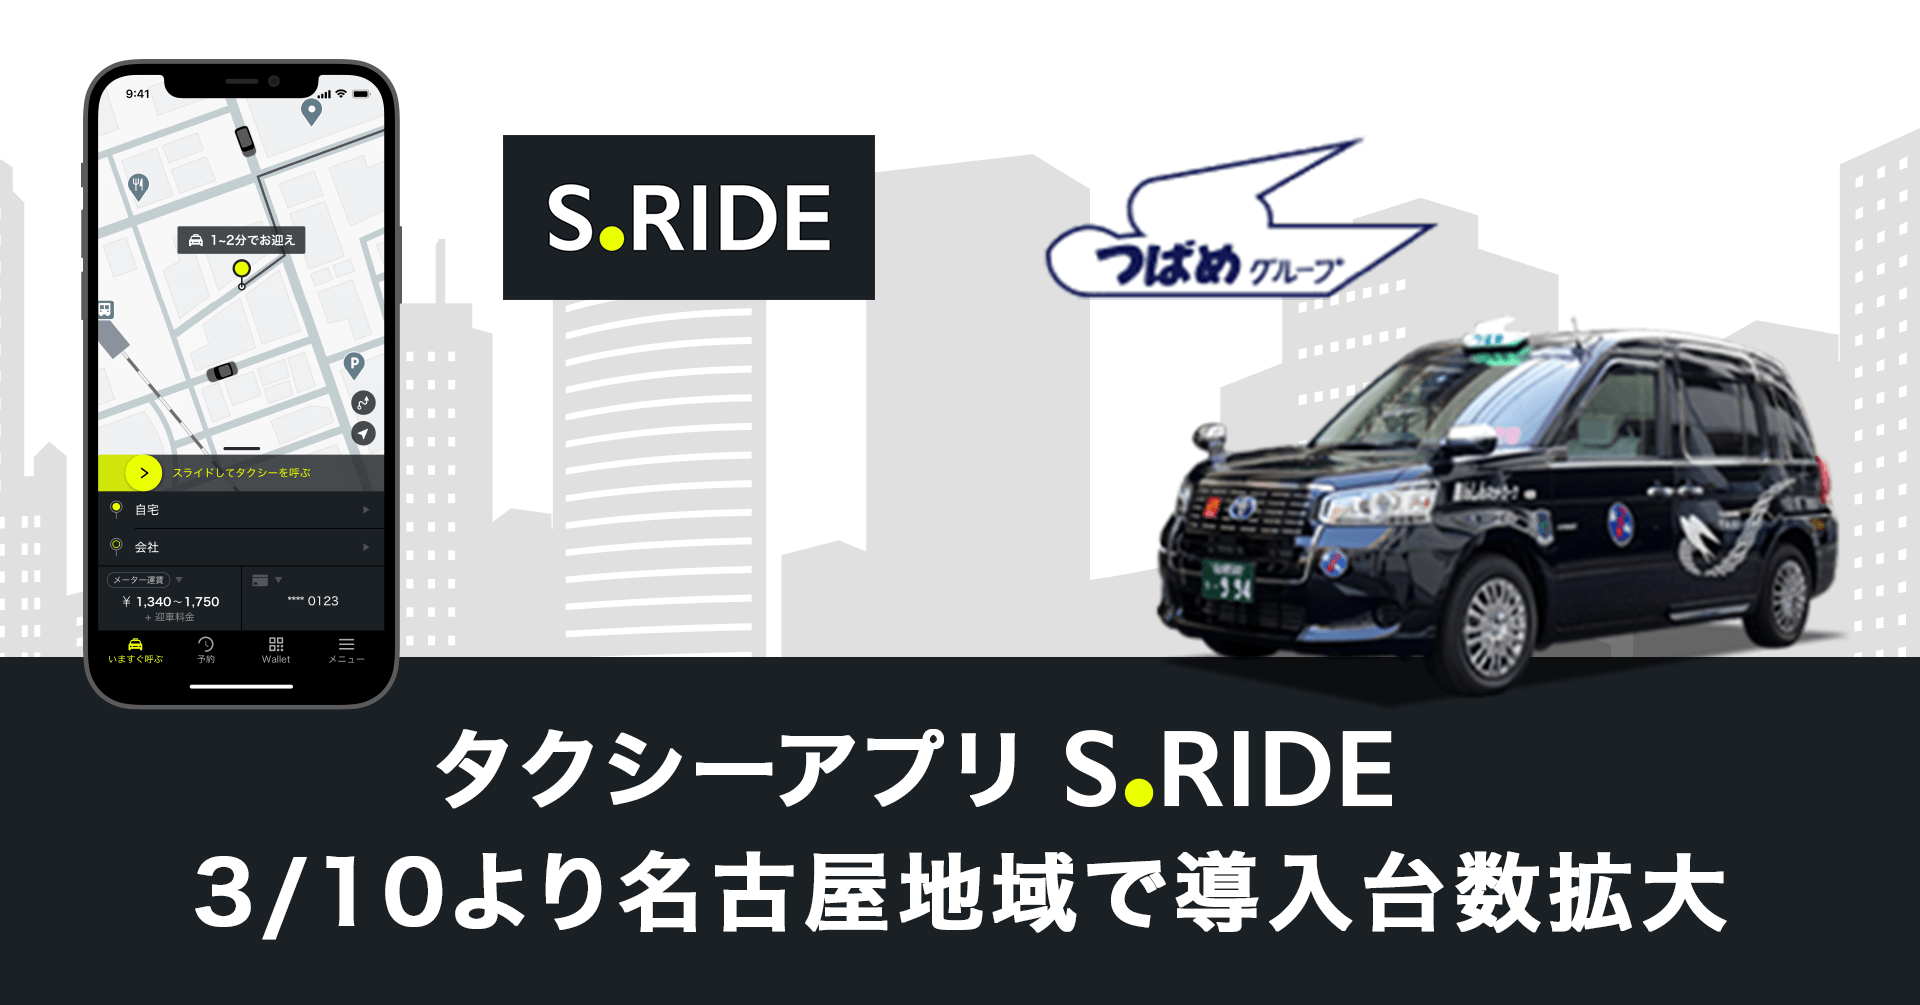 タクシーアプリ“S.RIDE”、つばめグループのサービス開始